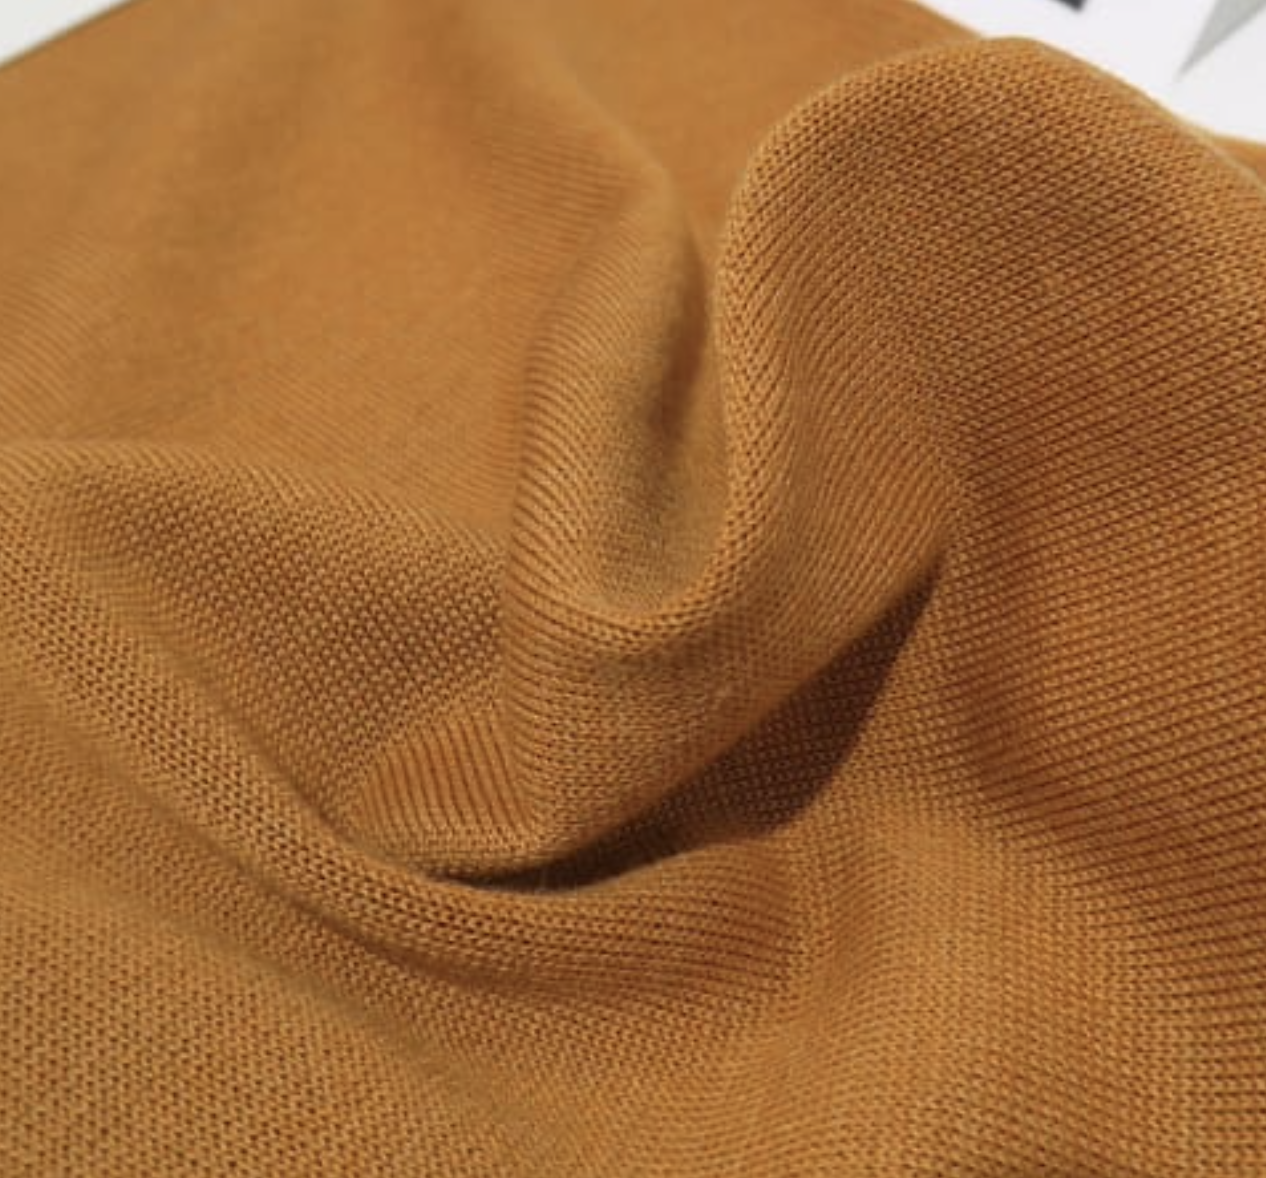 日本纺织纤维巨头东洋纺旗下公司、东丽集团发布可持续纤维和面料